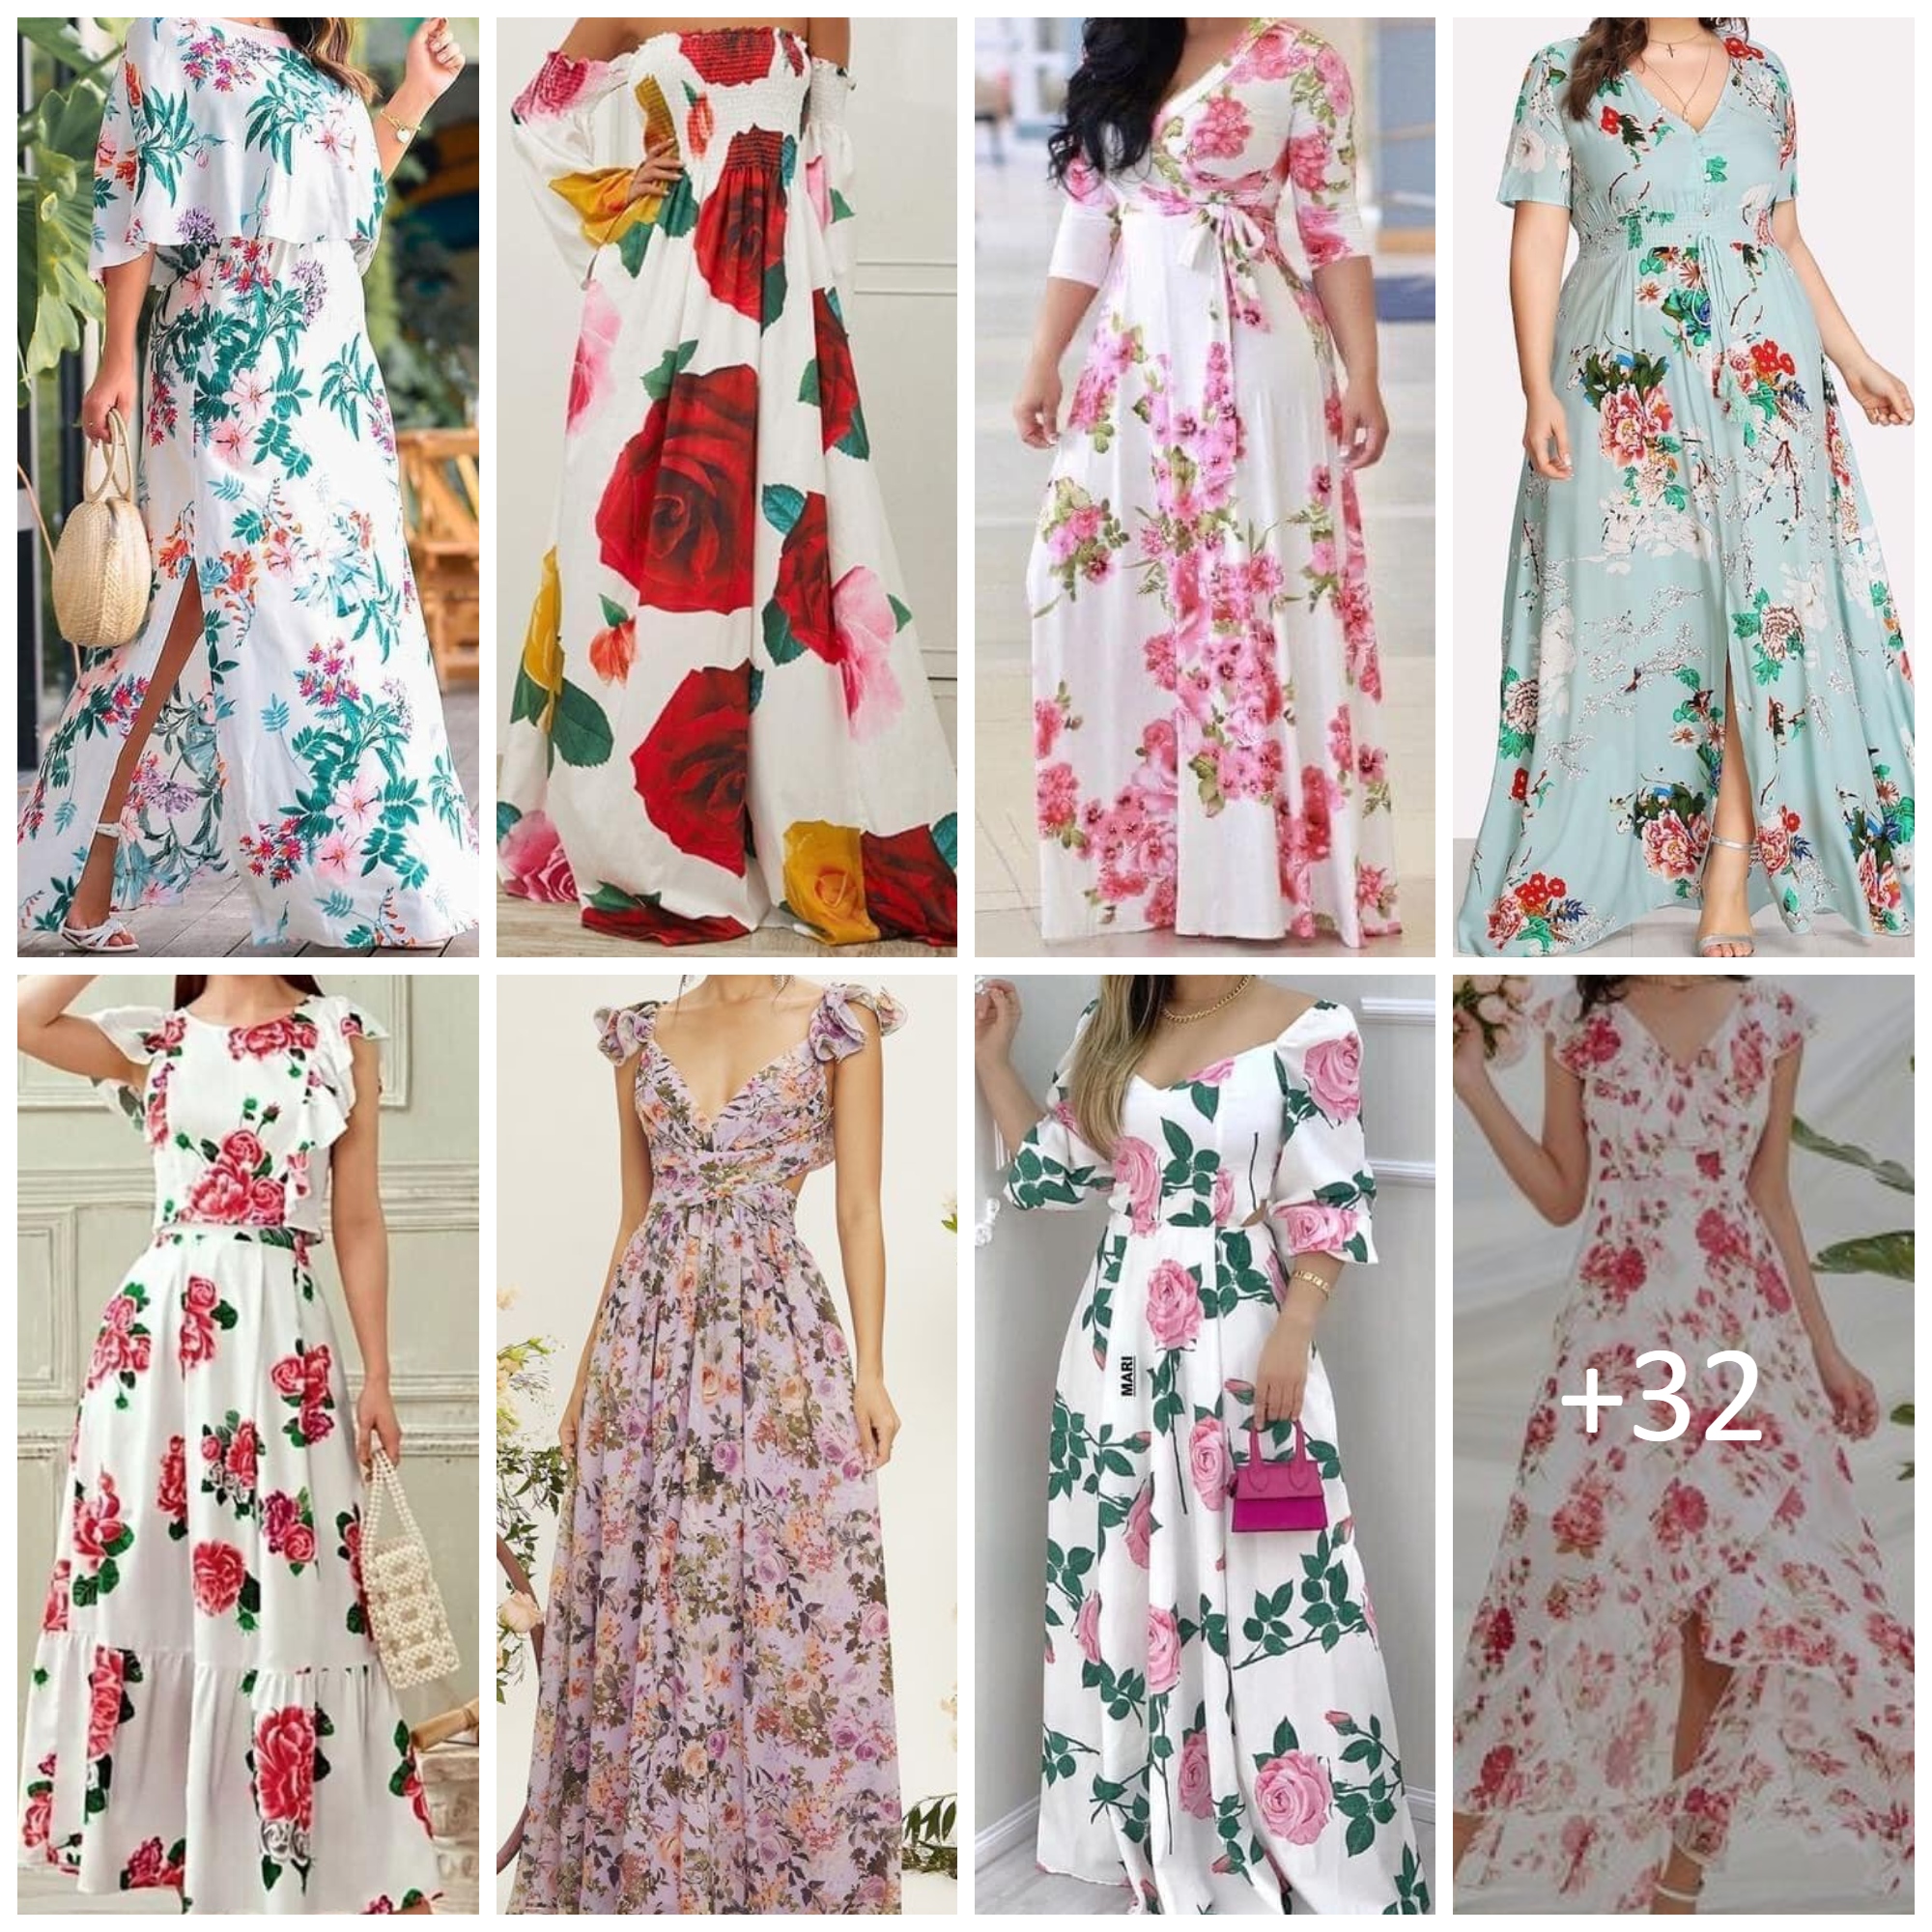 Floral Dresses for Spring